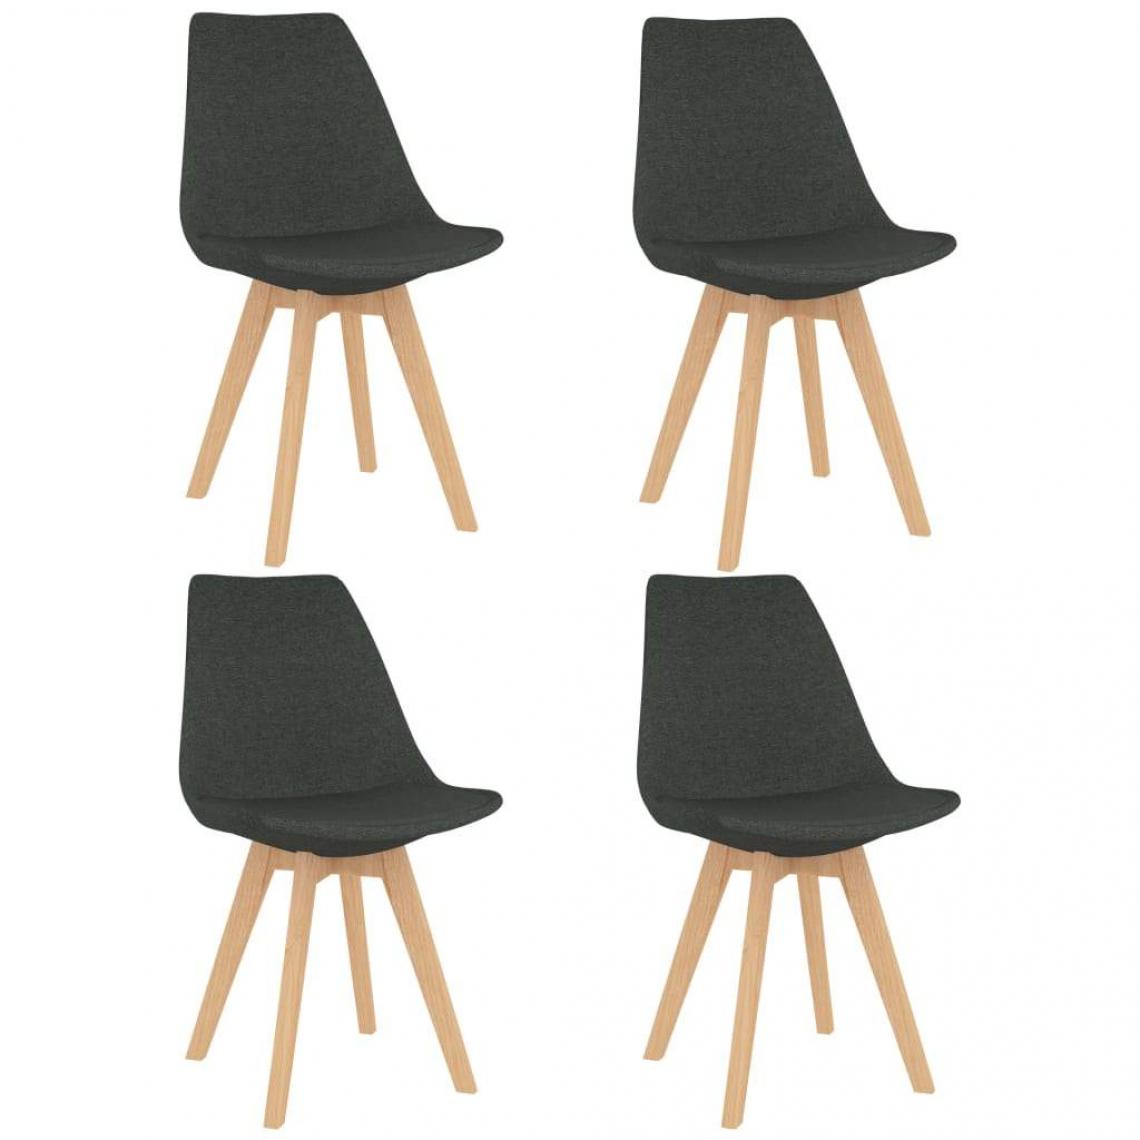 Decoshop26 - Lot de 4 chaises de salle à manger cuisine design moderne tissu gris foncé CDS021568 - Chaises